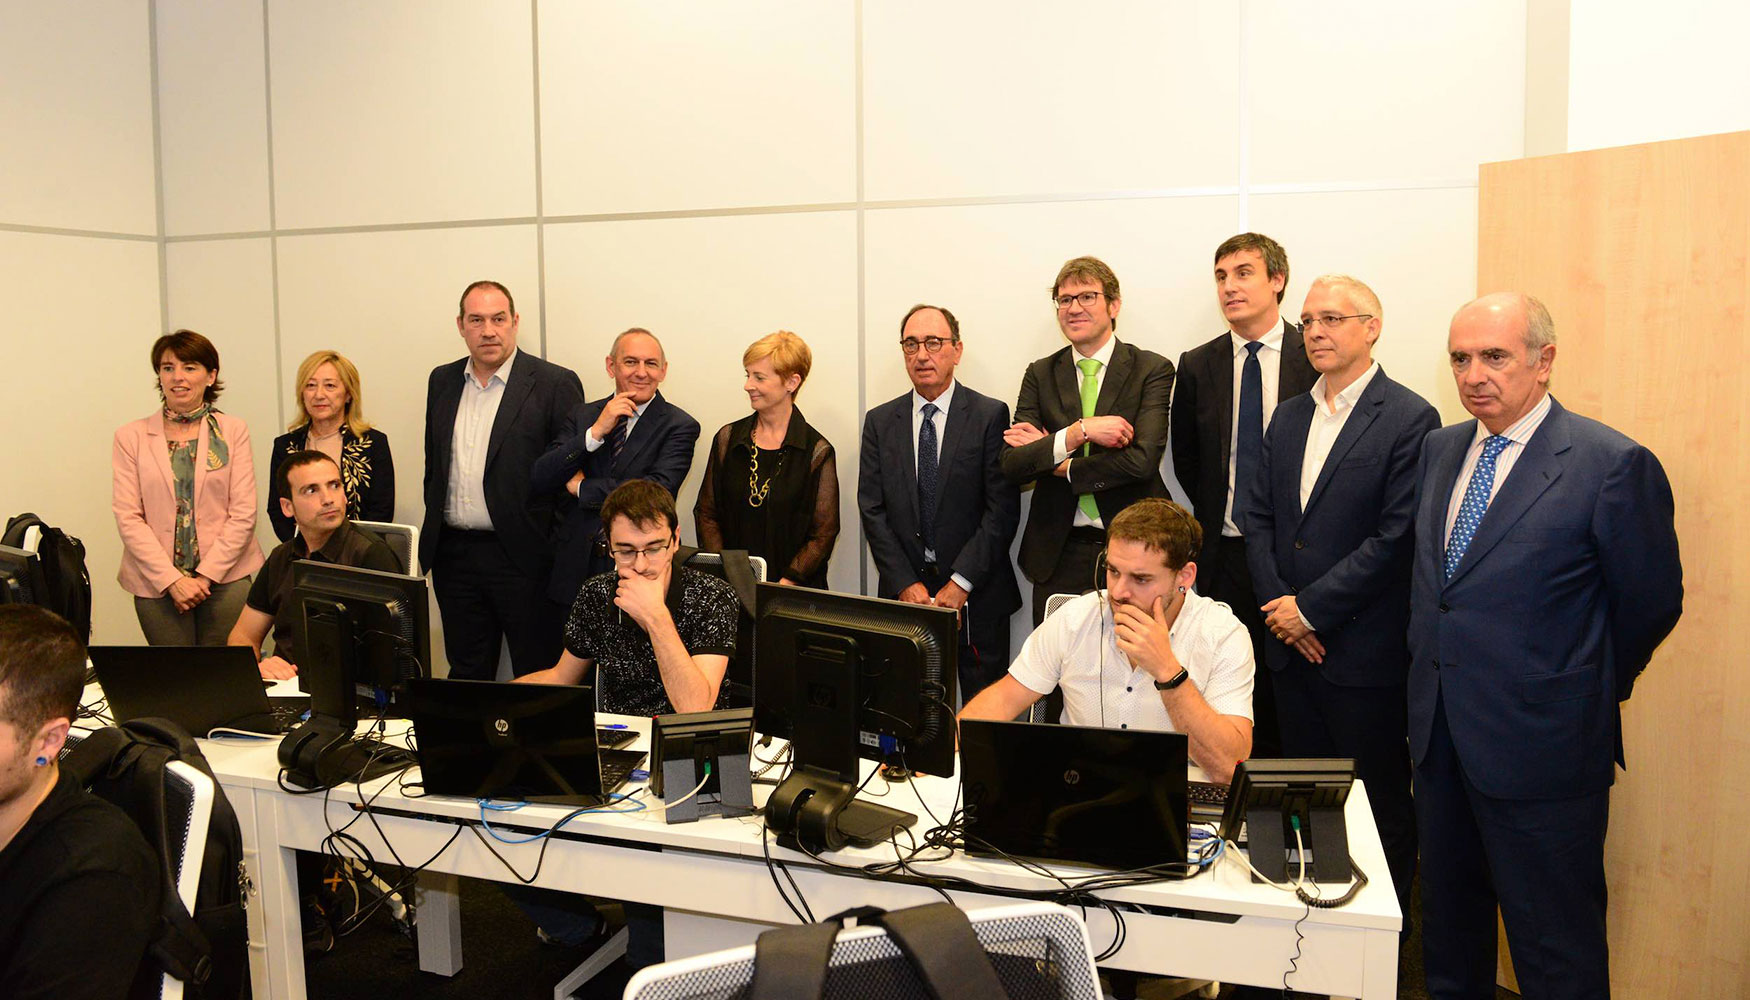 Representantes del Gobierno Vasco asisten a la inauguracin del nuevo Centro Avanzado de Operaciones de Ciberseguridad Industrial de Entelgy Ibai...